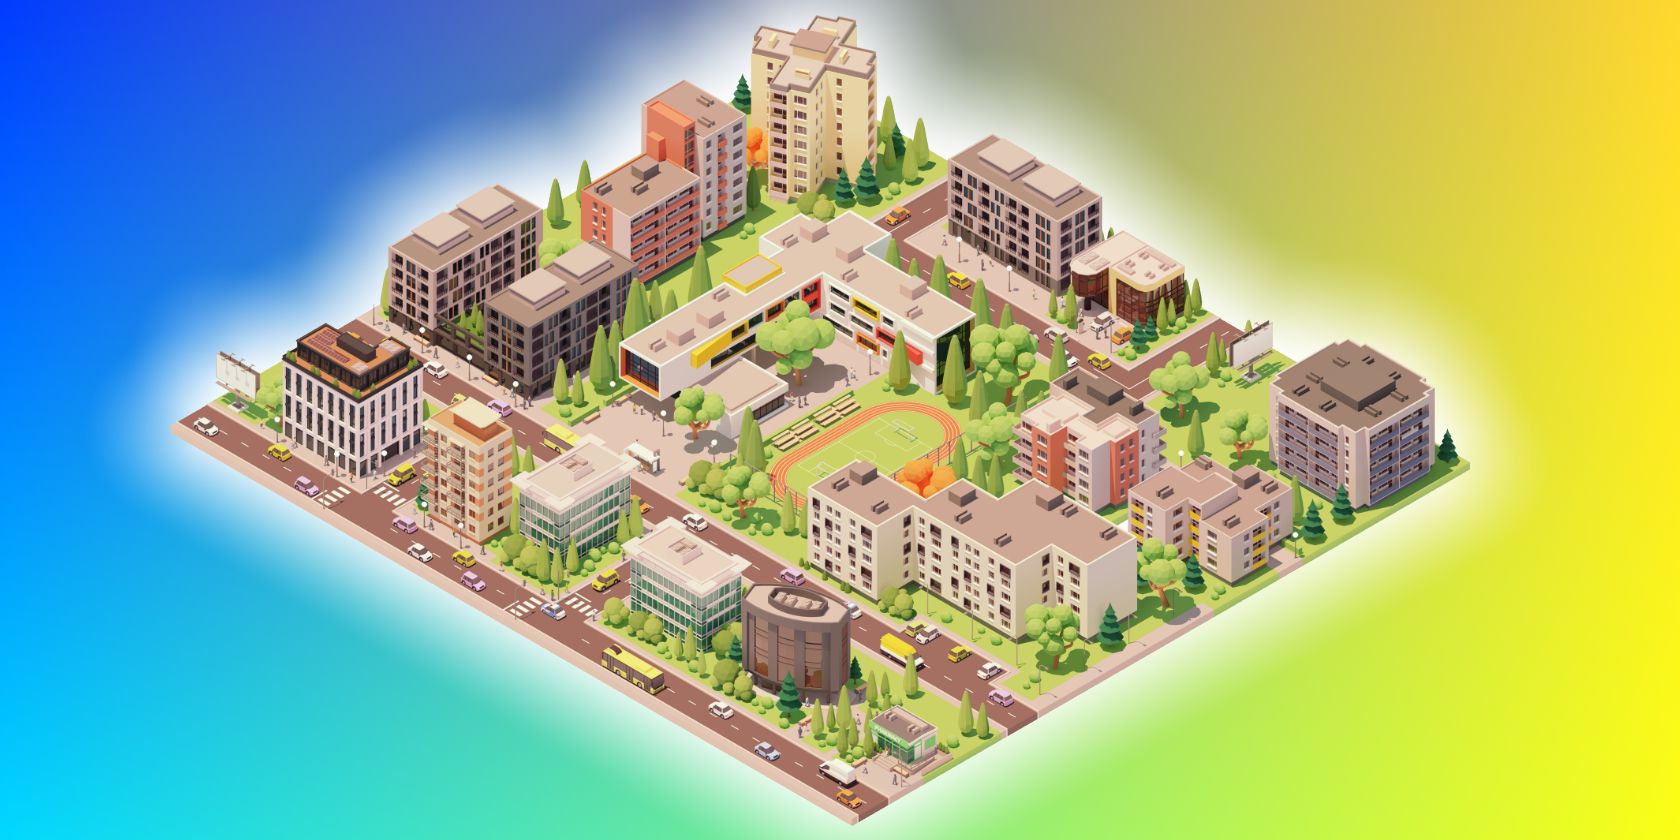 Valg polet på den anden side, The 8 Best City Building Games